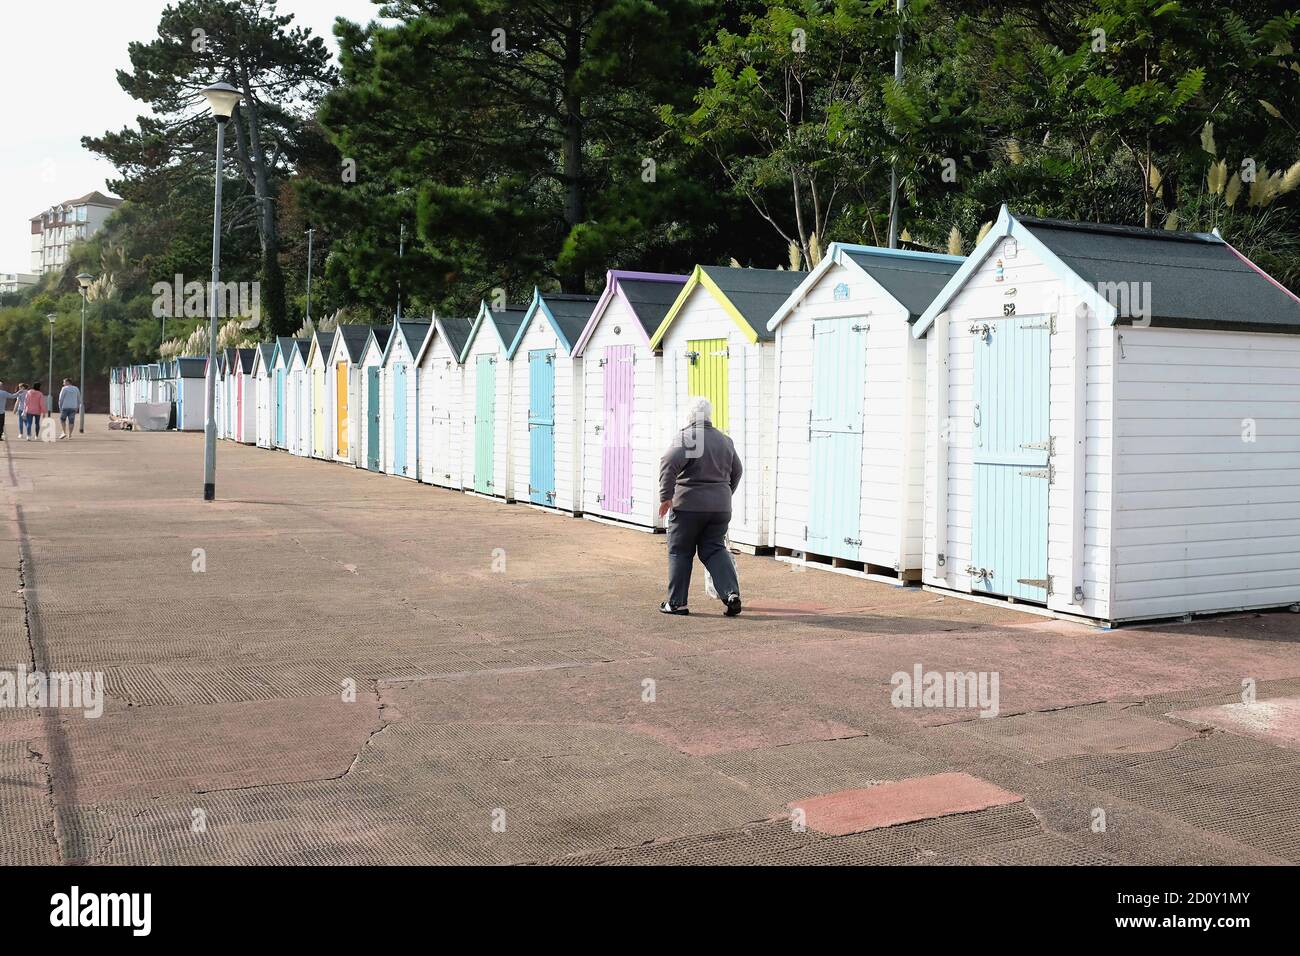 Goodrngton, Devon, Großbritannien. September 18, 2020. Urlauber, die auf der Promenade vor bunten Strandhütten in Goodrington bei Paignton in Devon, Großbritannien, spazieren gehen Stockfoto